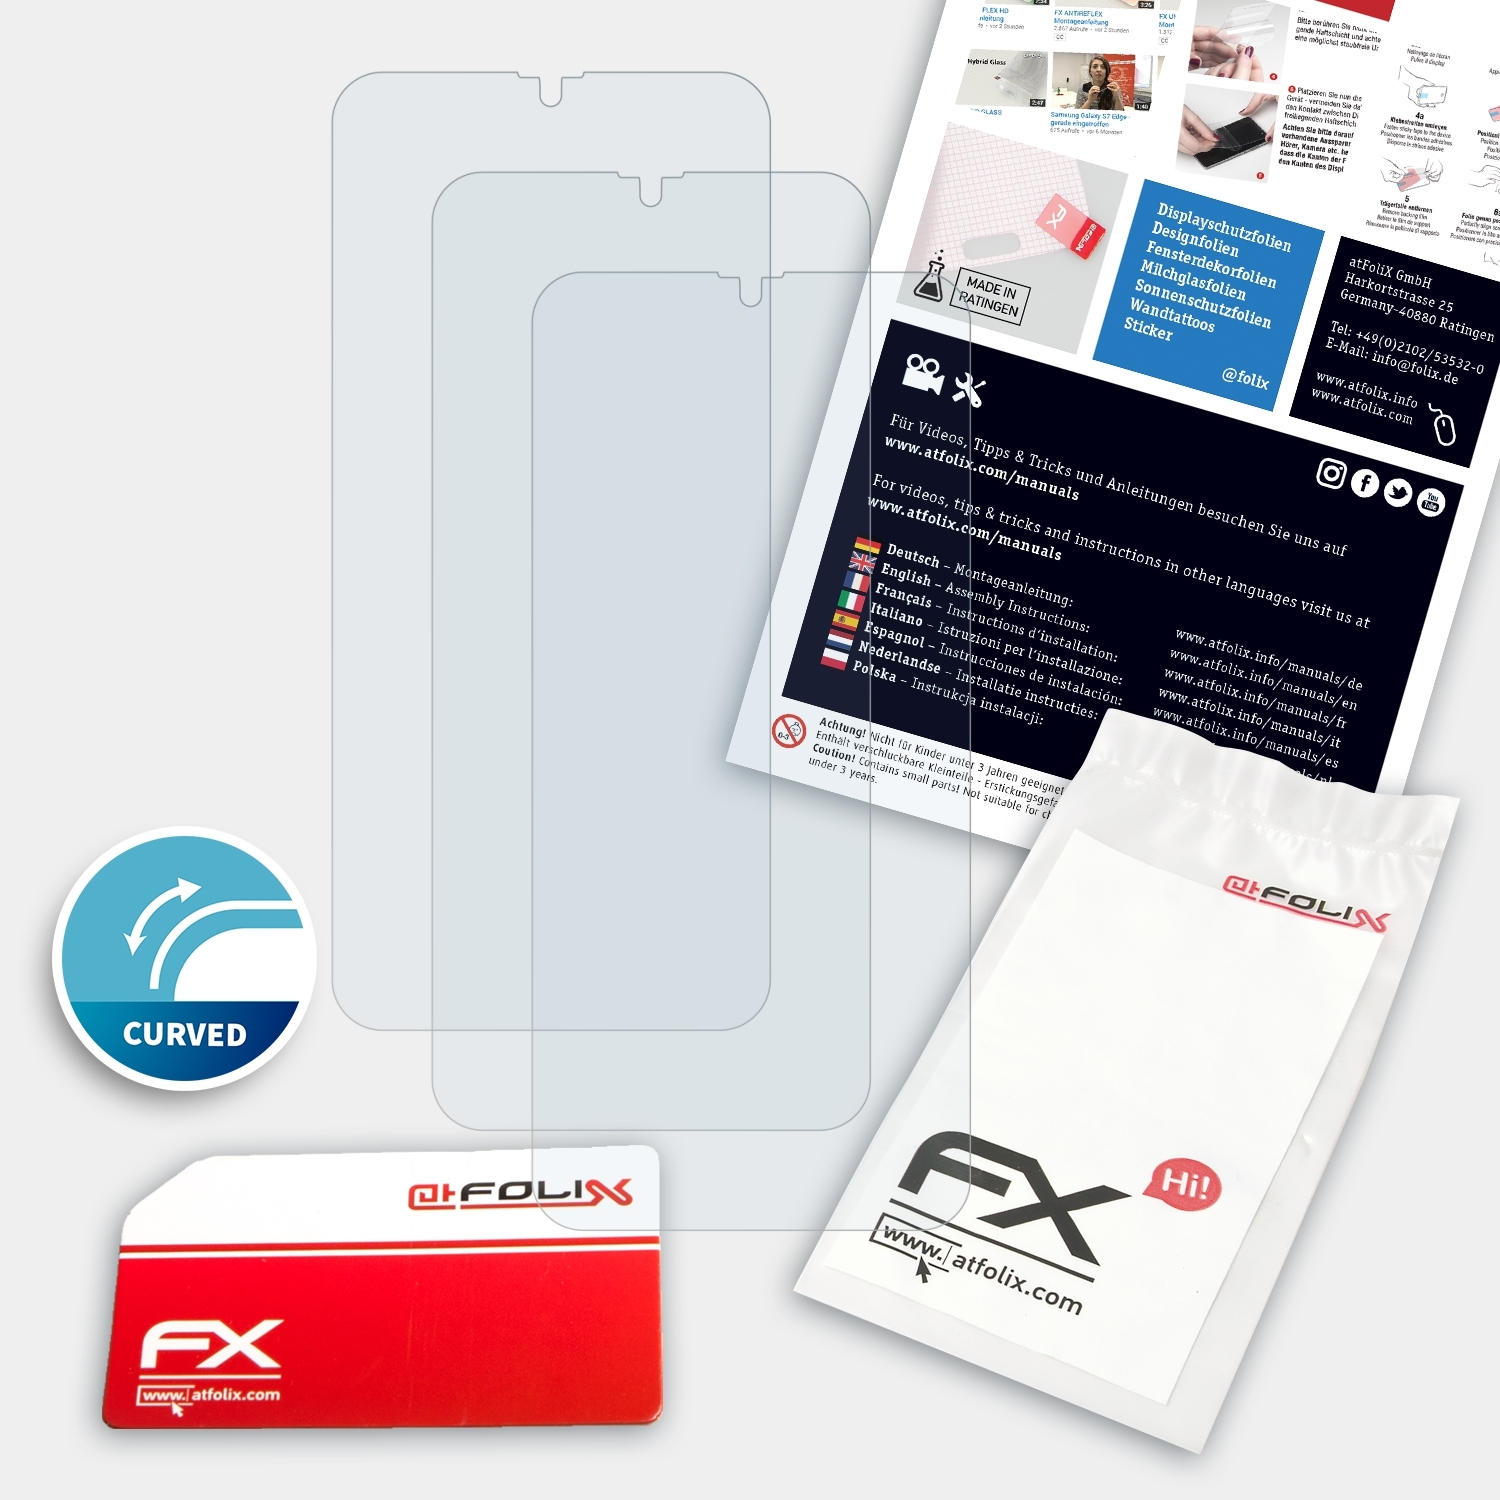 Displayschutz(für FX-ActiFleX (2019)) ATFOLIX 3x Note 7 Ulefone